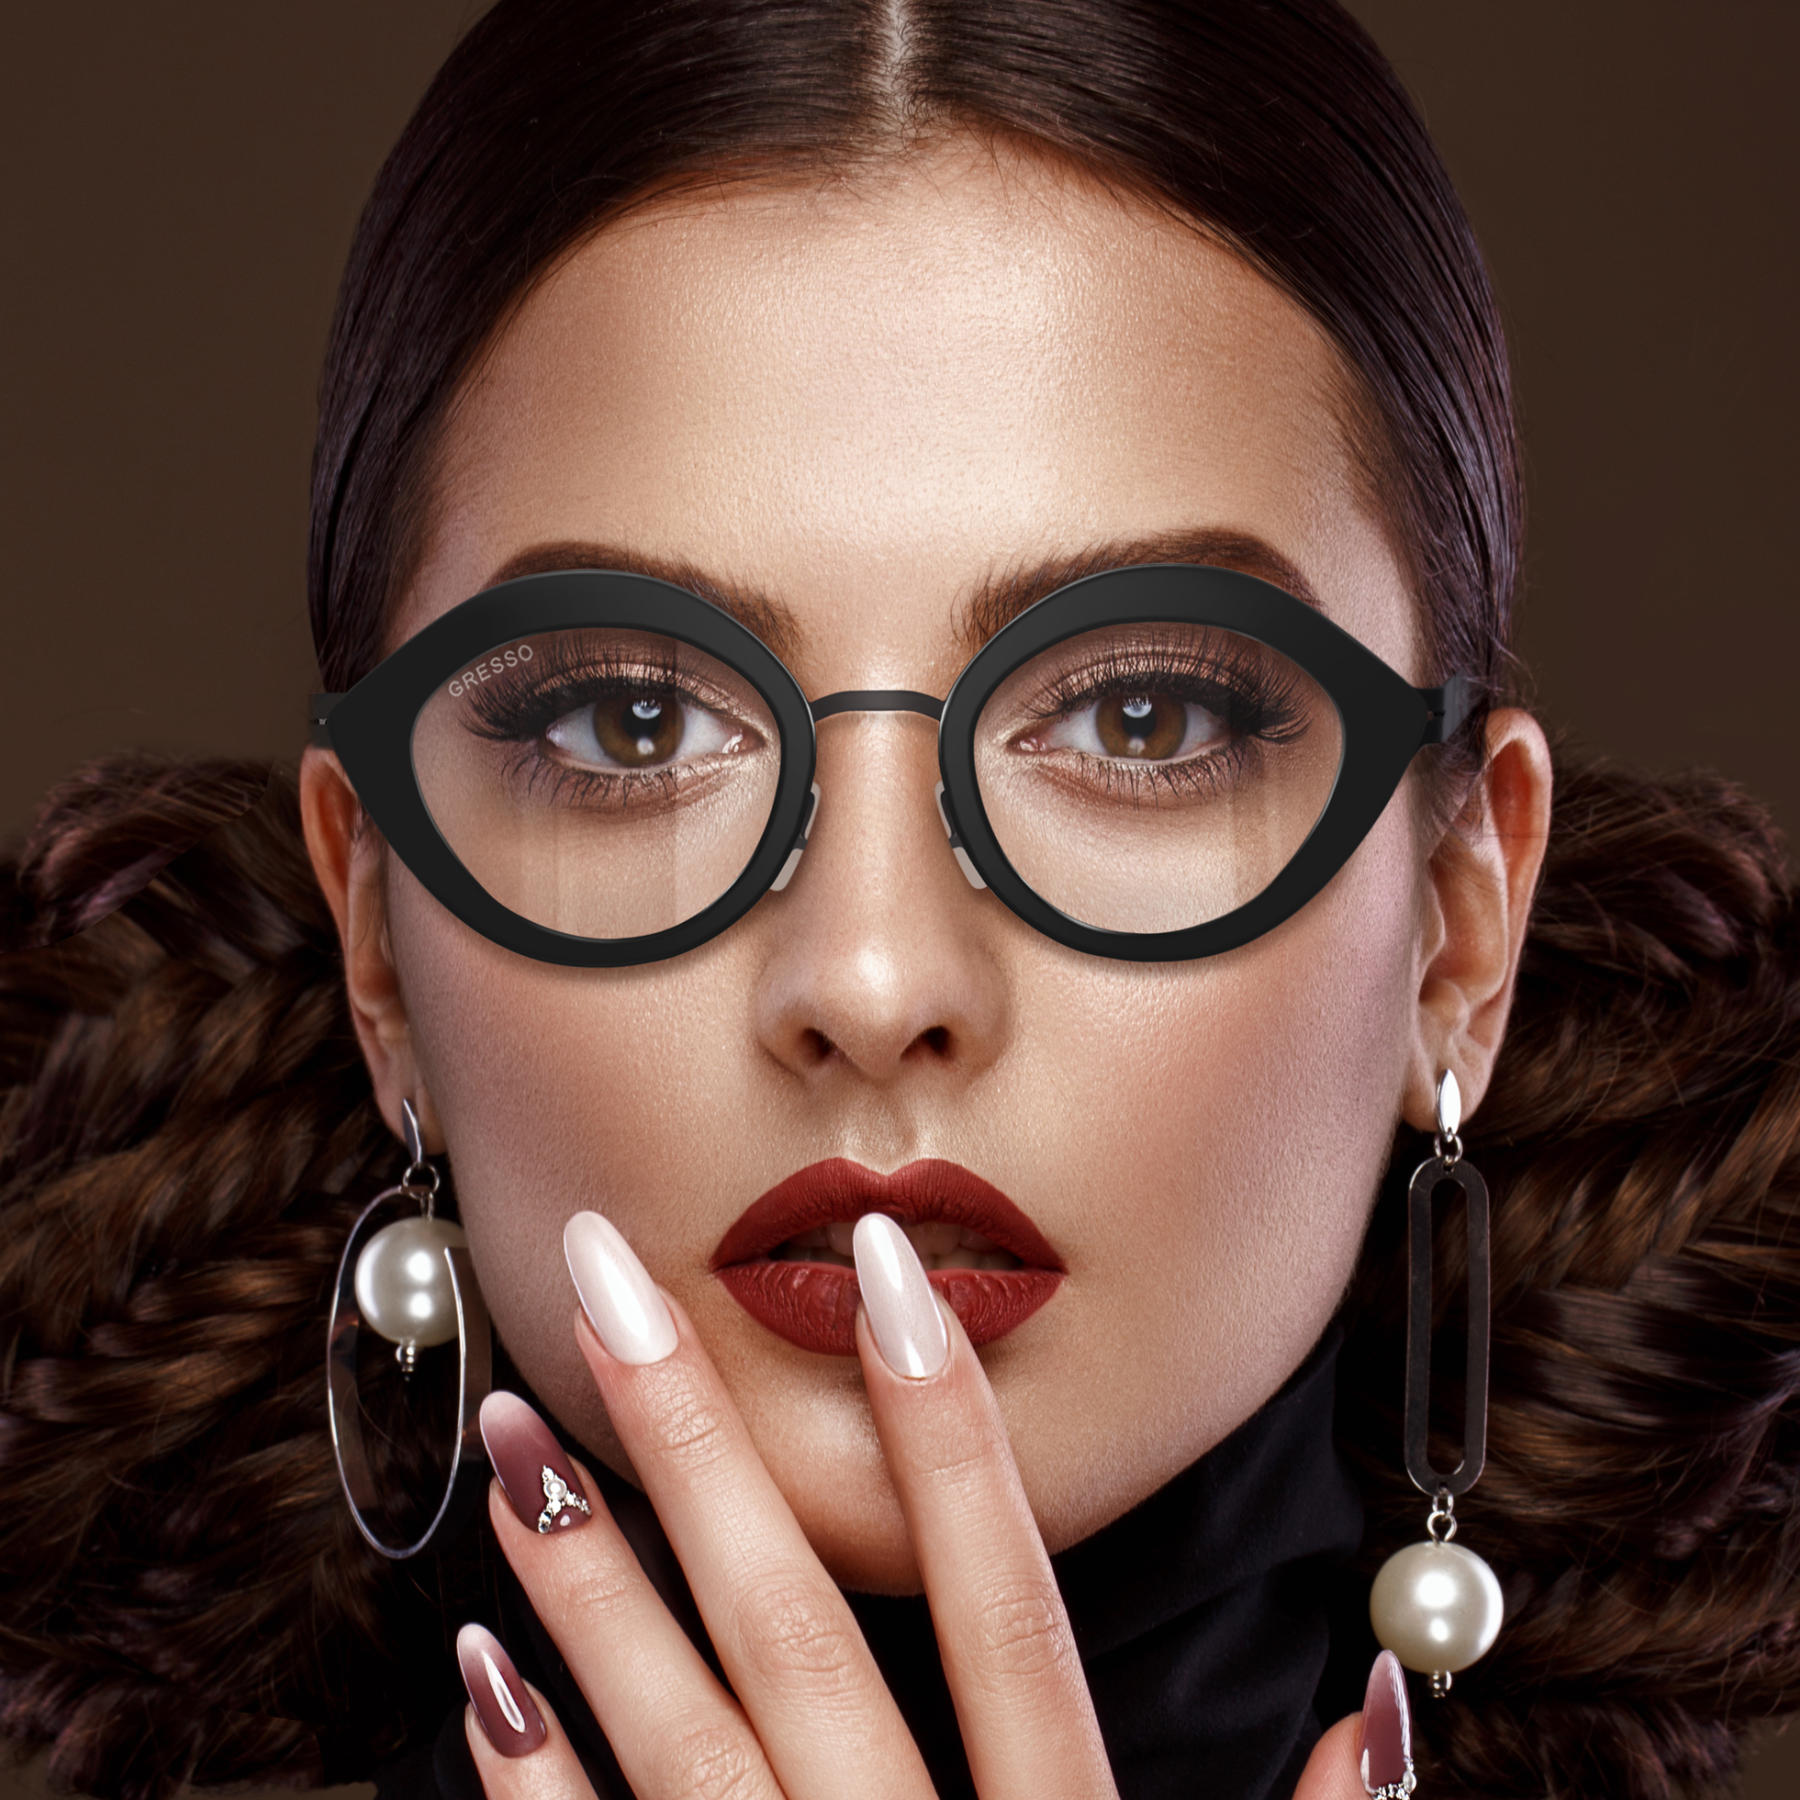 Купить онлайн или в салонах оптики в Москве и Санкт-Петербурге женские титановые очки для зрения GRESSO Colette с диоптриями, изготовленные по вашему рецепту. Воспользуйтесь услугой бесплатной проверки зрения и консультацией опытного врача-офтальмолога.